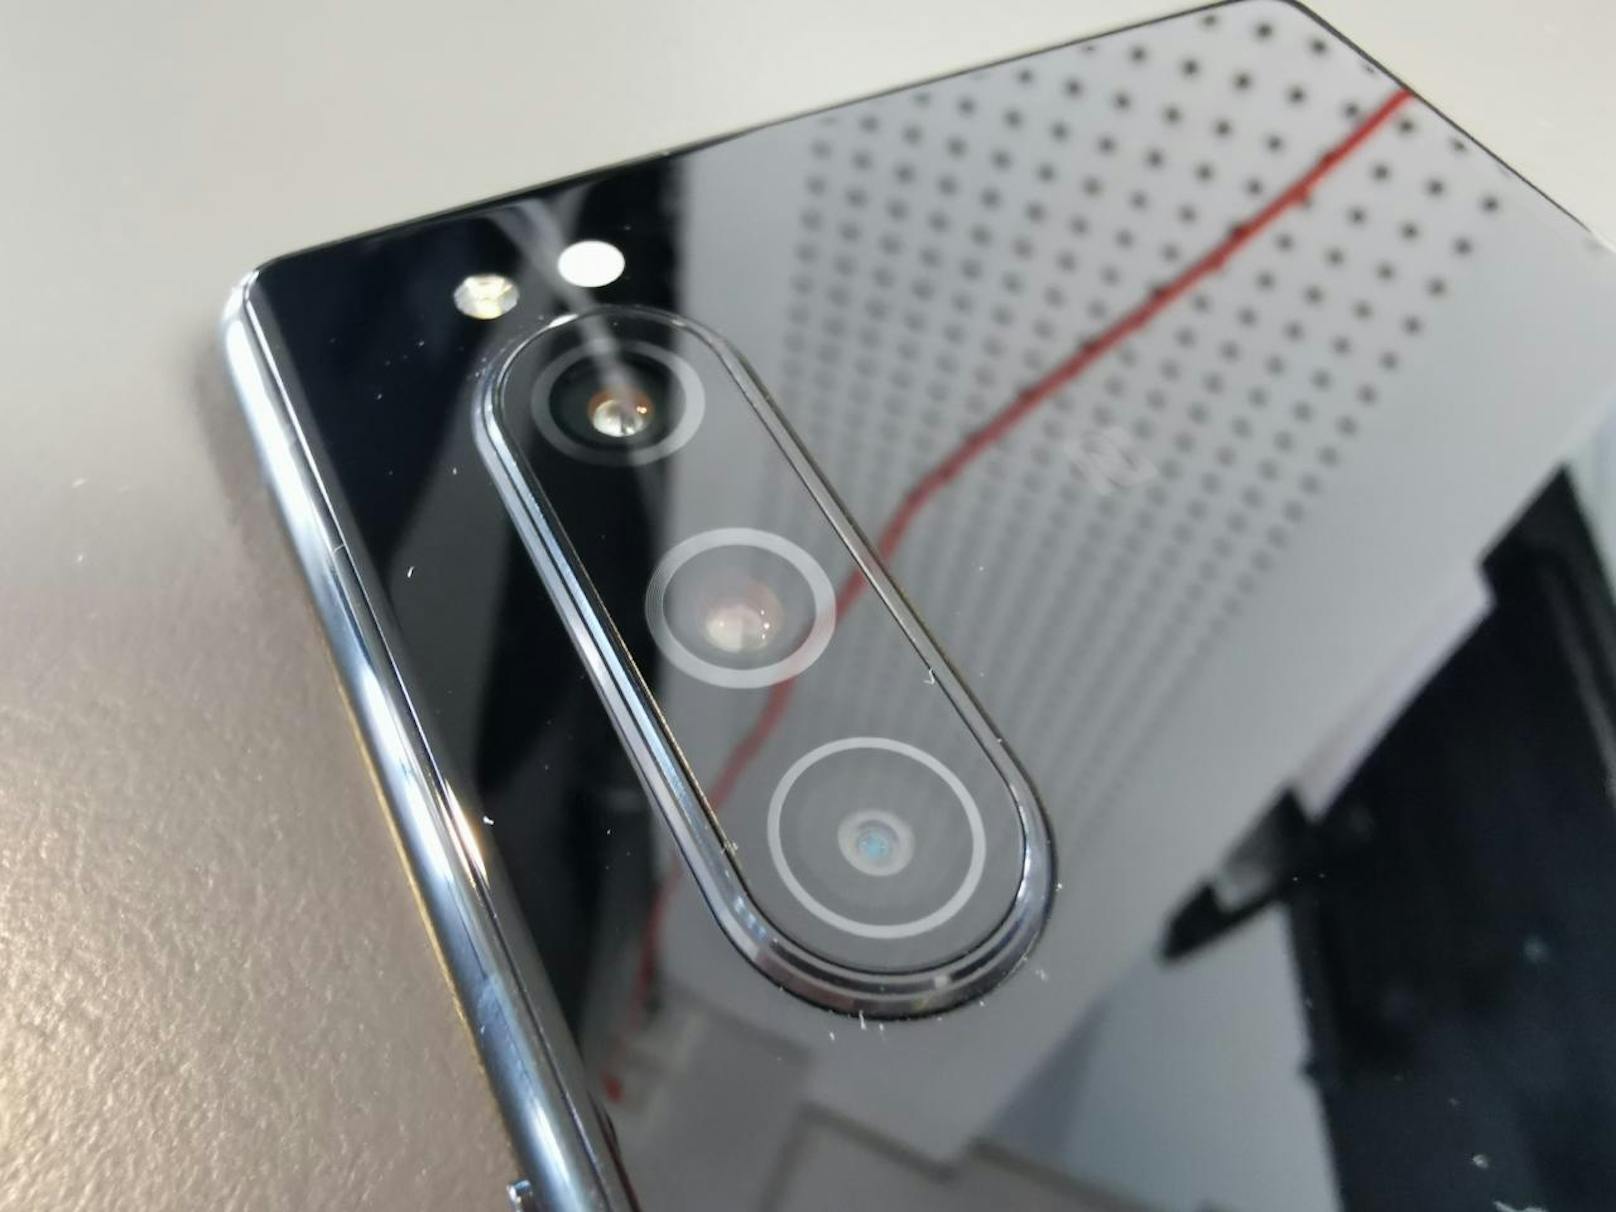 Neu ist die Dreifach-Kamera auf der Rückseite, die dem Huawei P30 ähnlich sieht und leicht aus dem Gehäuse hervorsteht. Mit nur knapp über 160 Gramm ist das Smartphone zudem ungewöhnlich leicht, es hält sich aber sicher in der Hand.